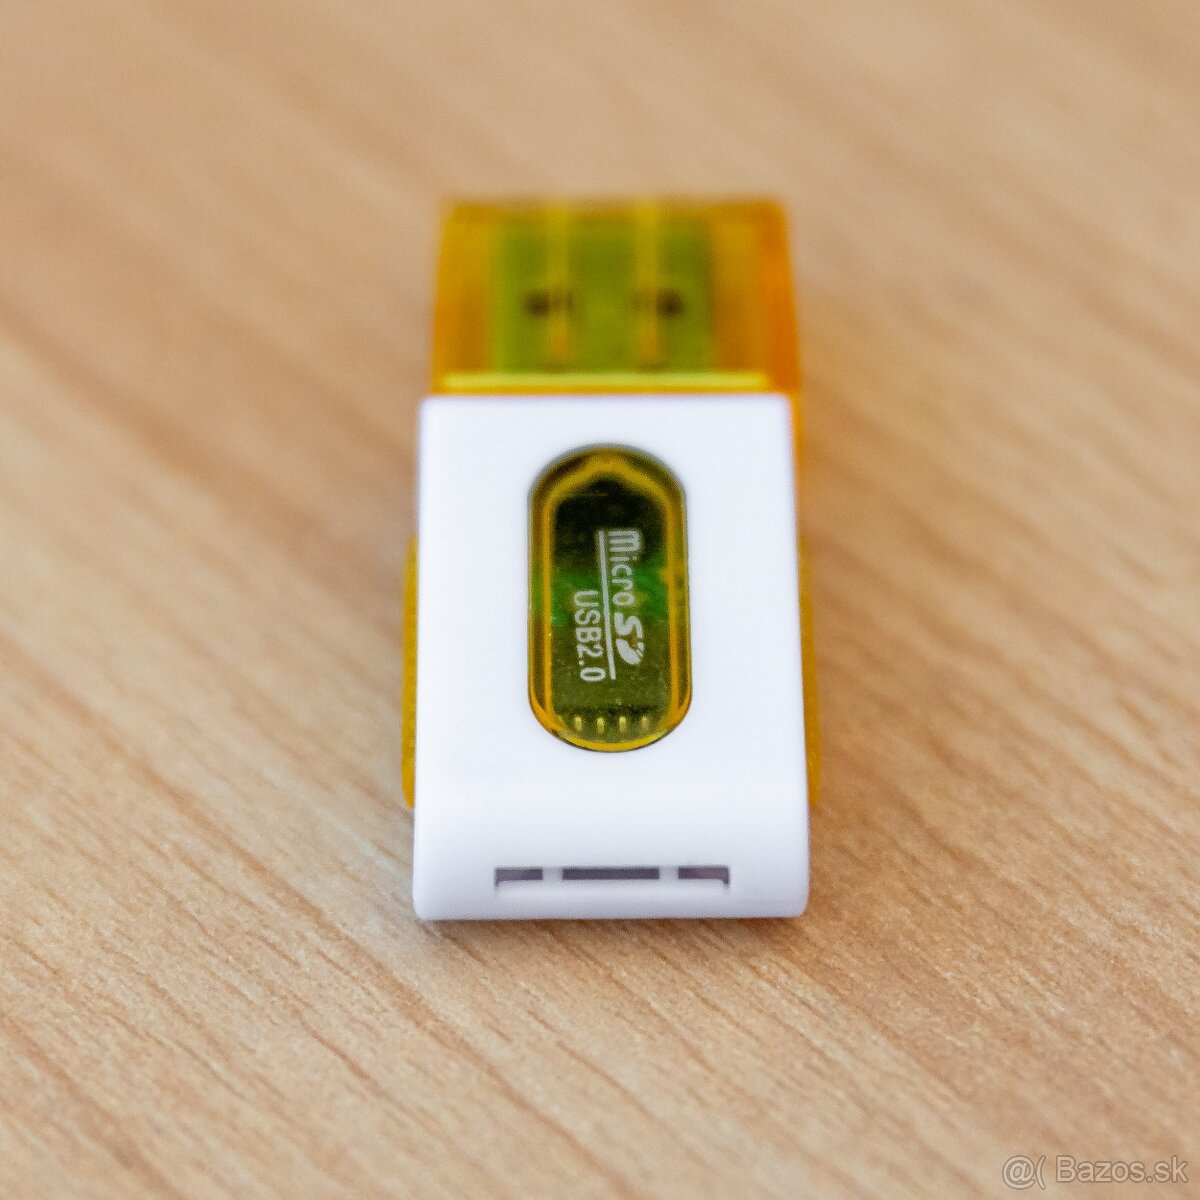 USB adaptér na Micro SD karty